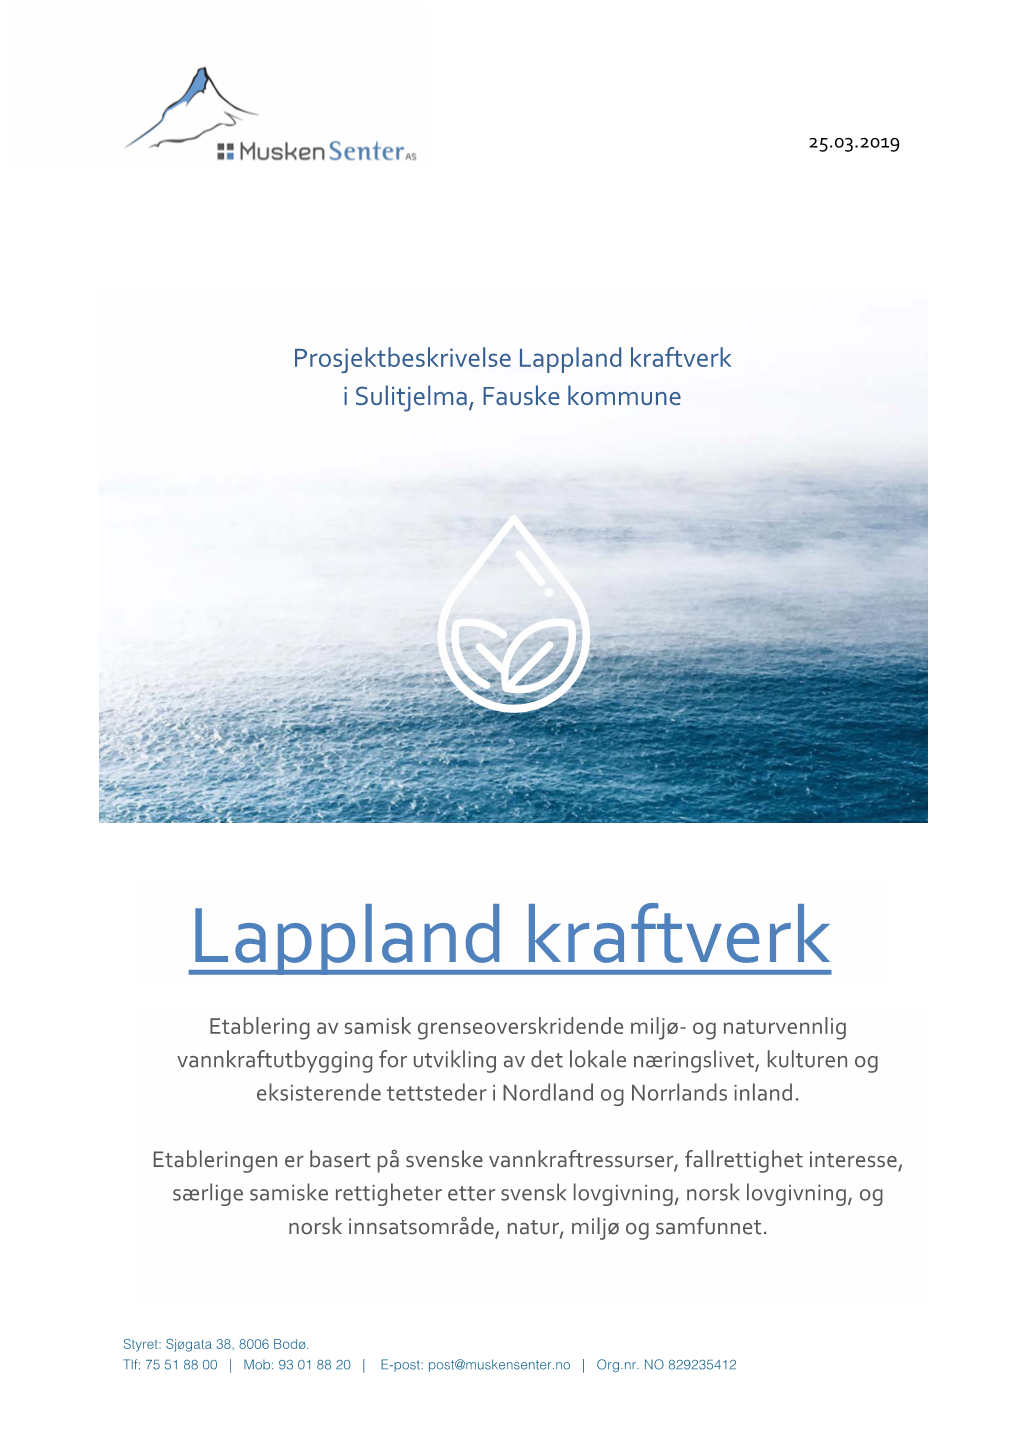 Lappland Kraftverk I Sulitjelma, Fauske Kommune